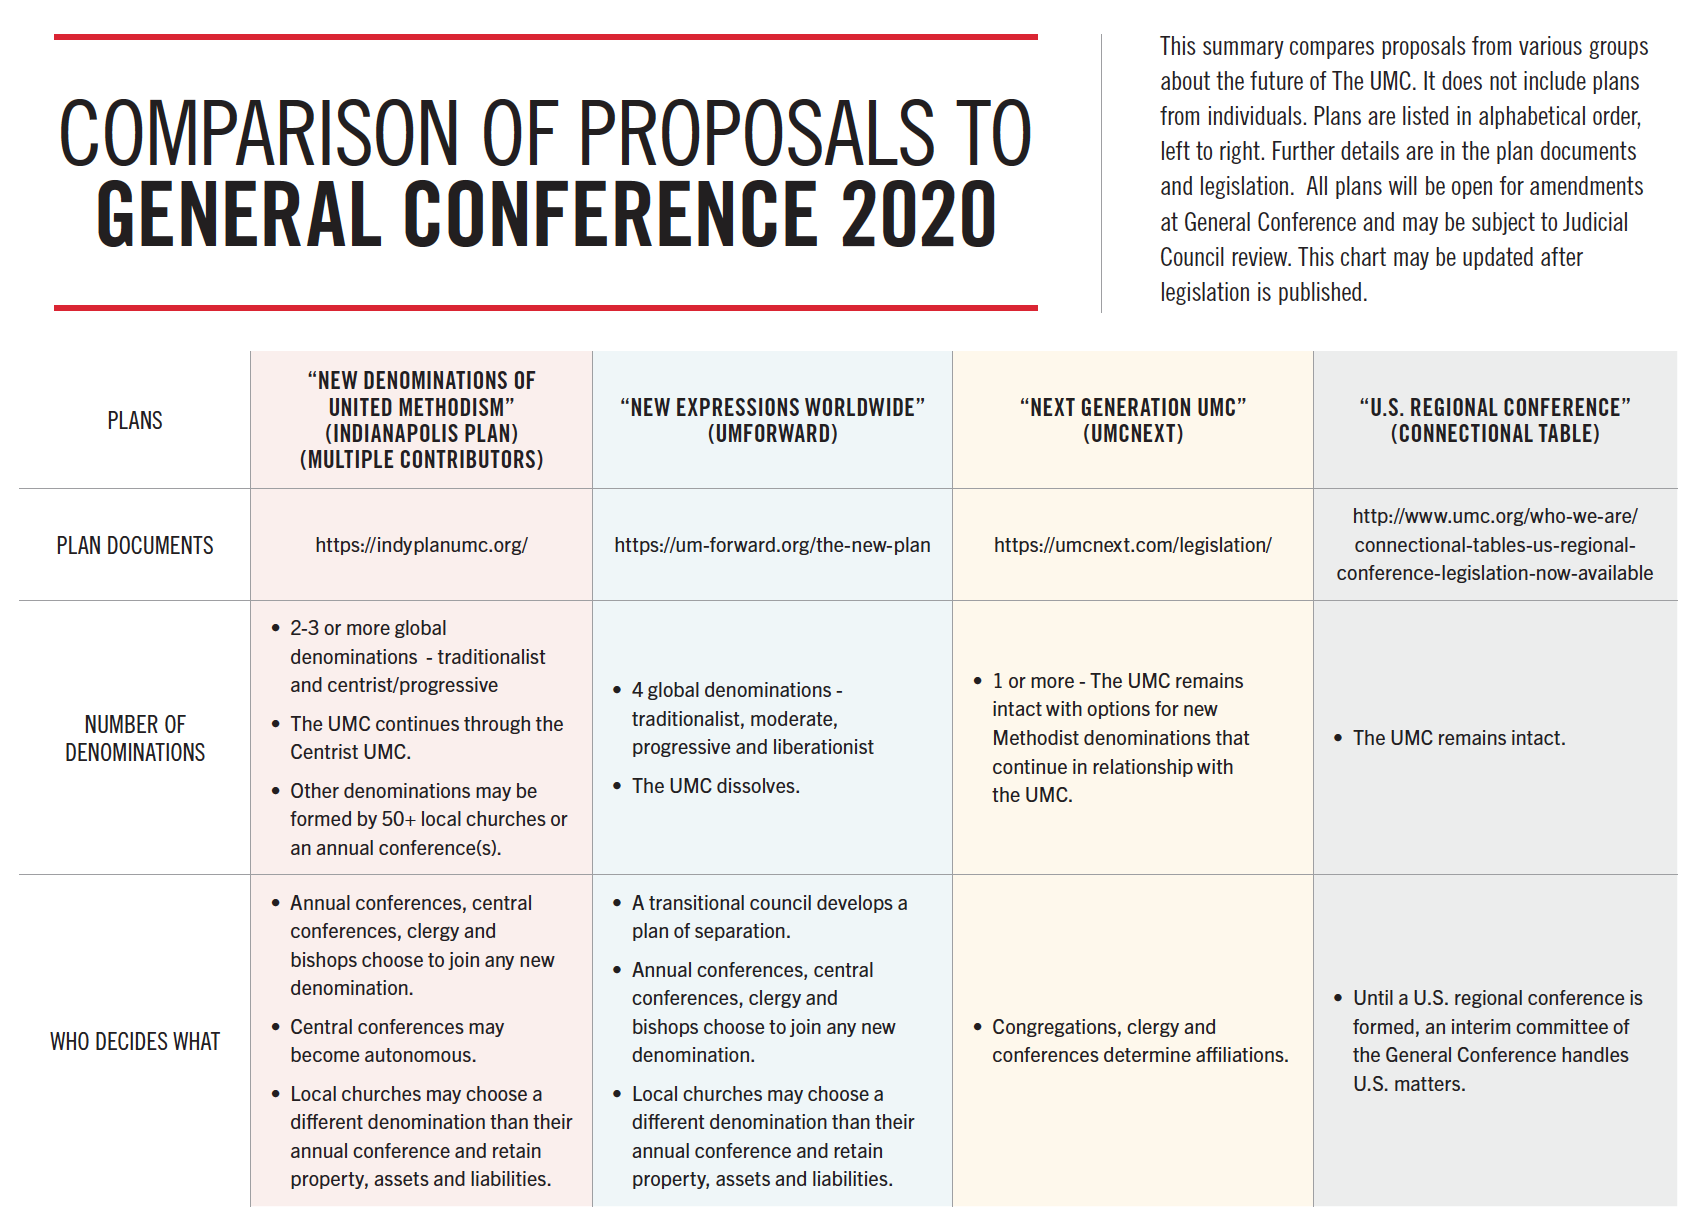 GC Plans Proposals 20 A